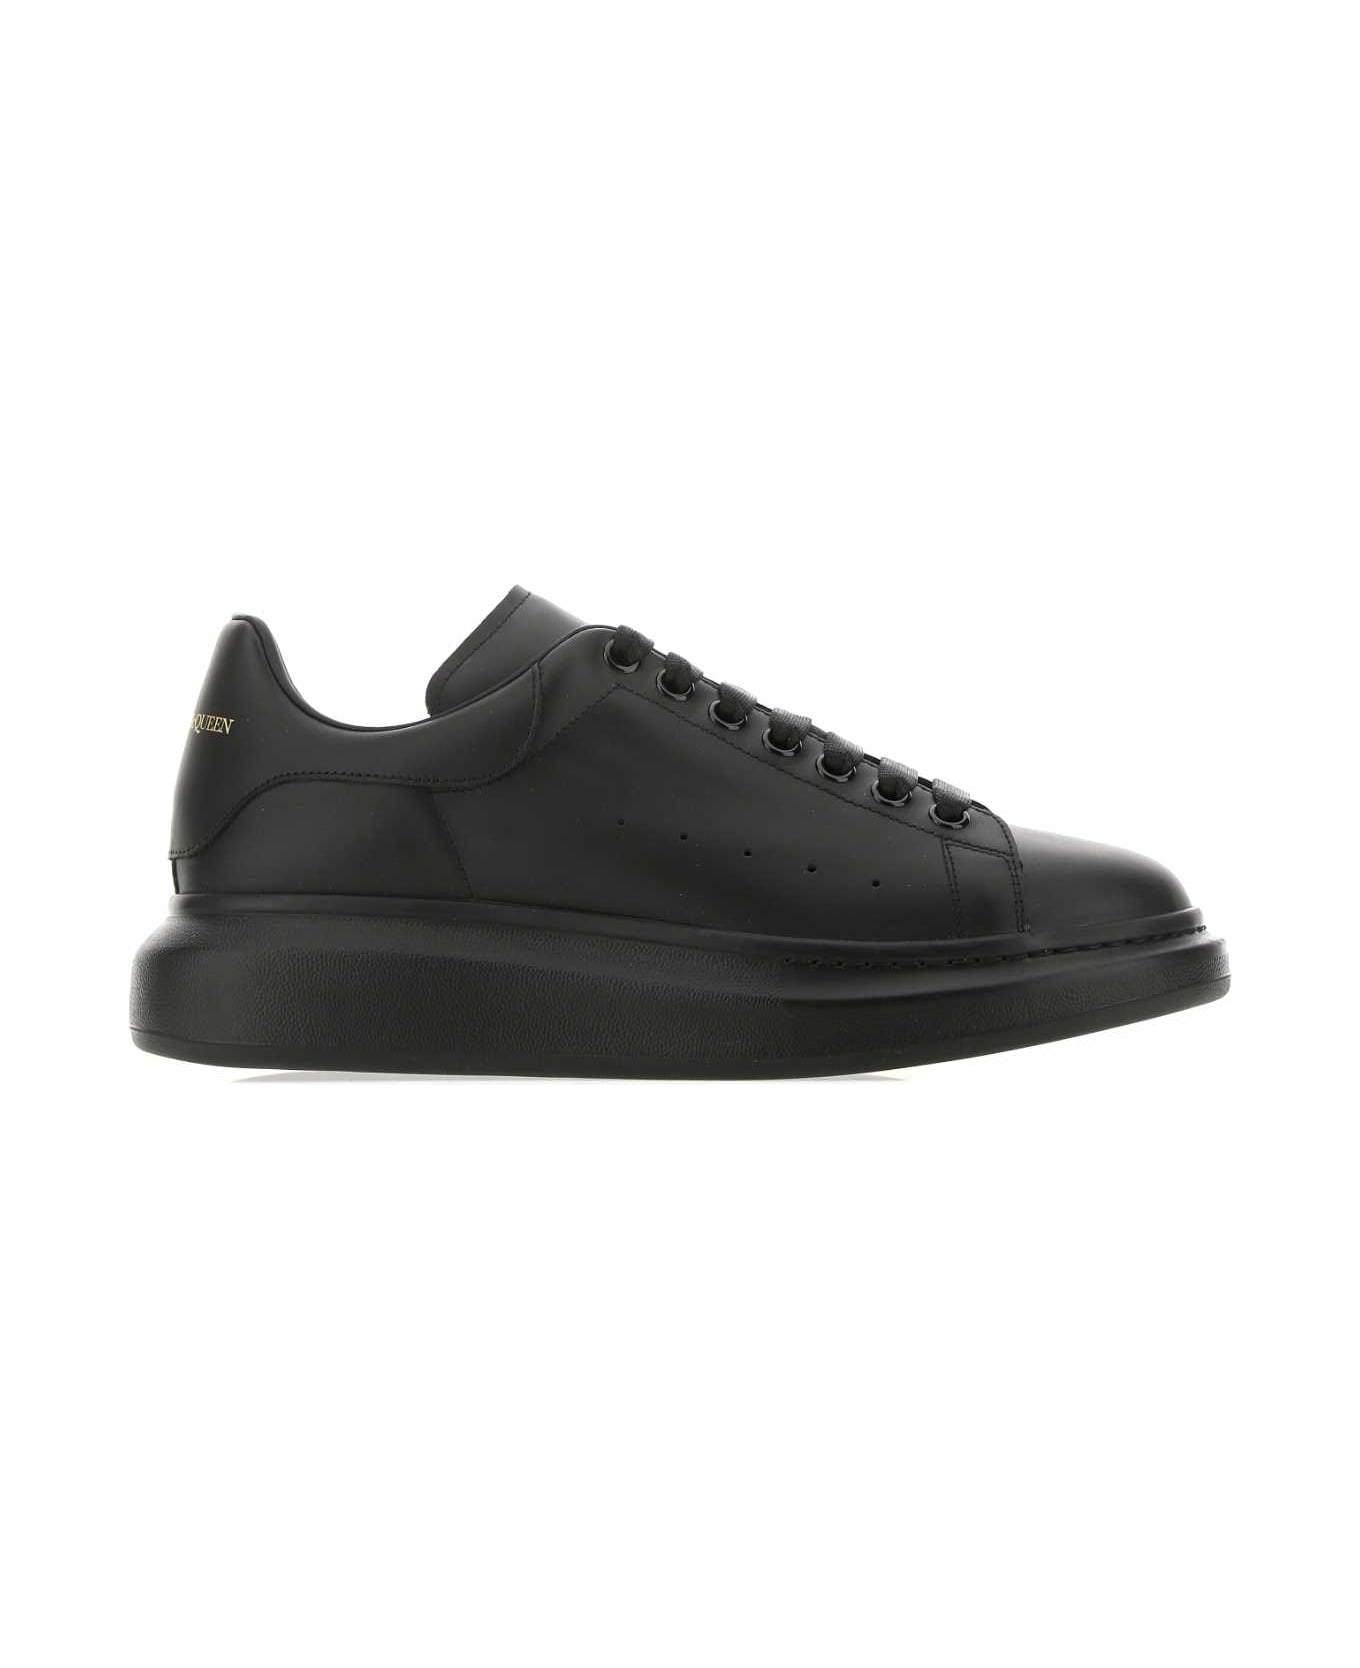 Alexander McQueen Black Leather Sneakers - 1000